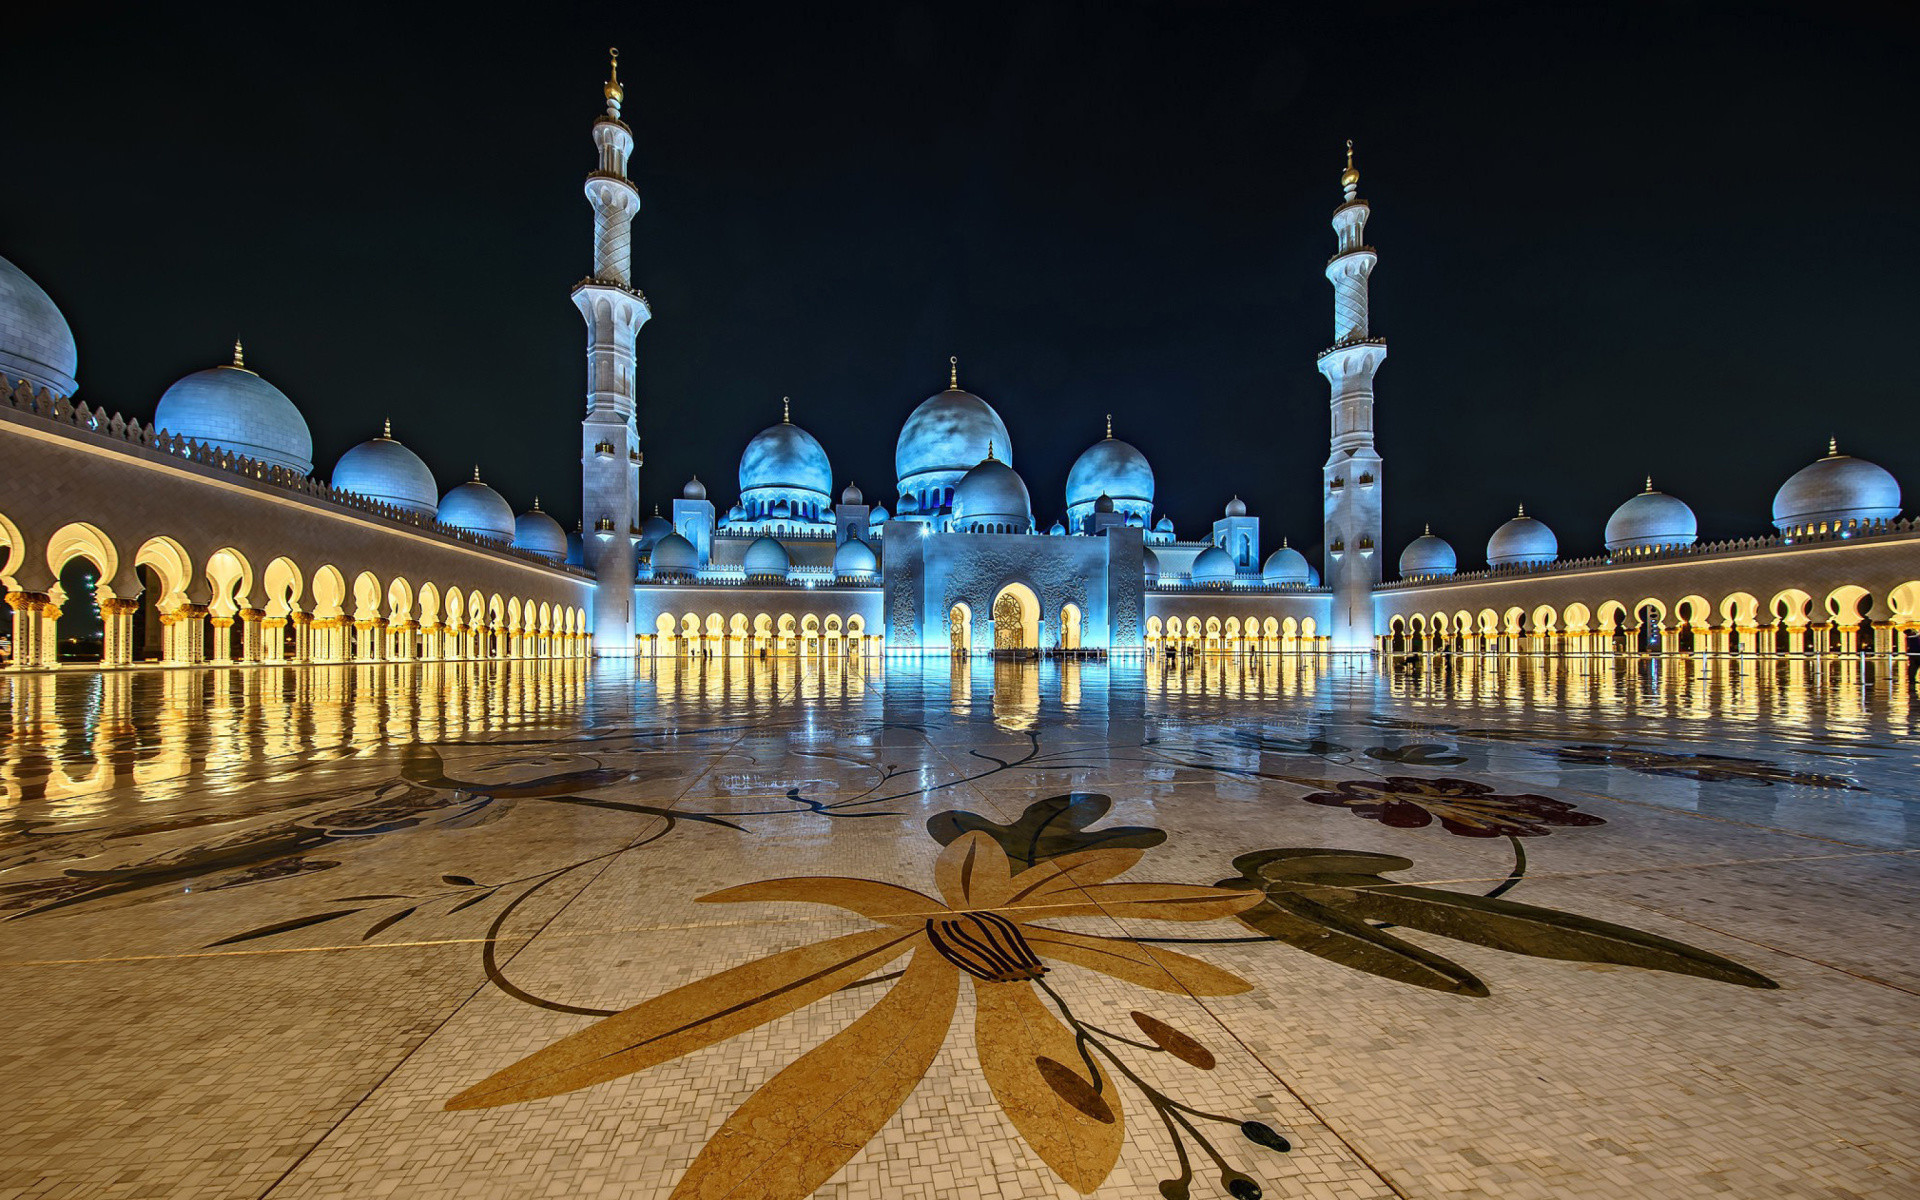 fond d'écran islamique 1920x1080,mosquée,lieux saints,bâtiment,nuit,lieu de culte